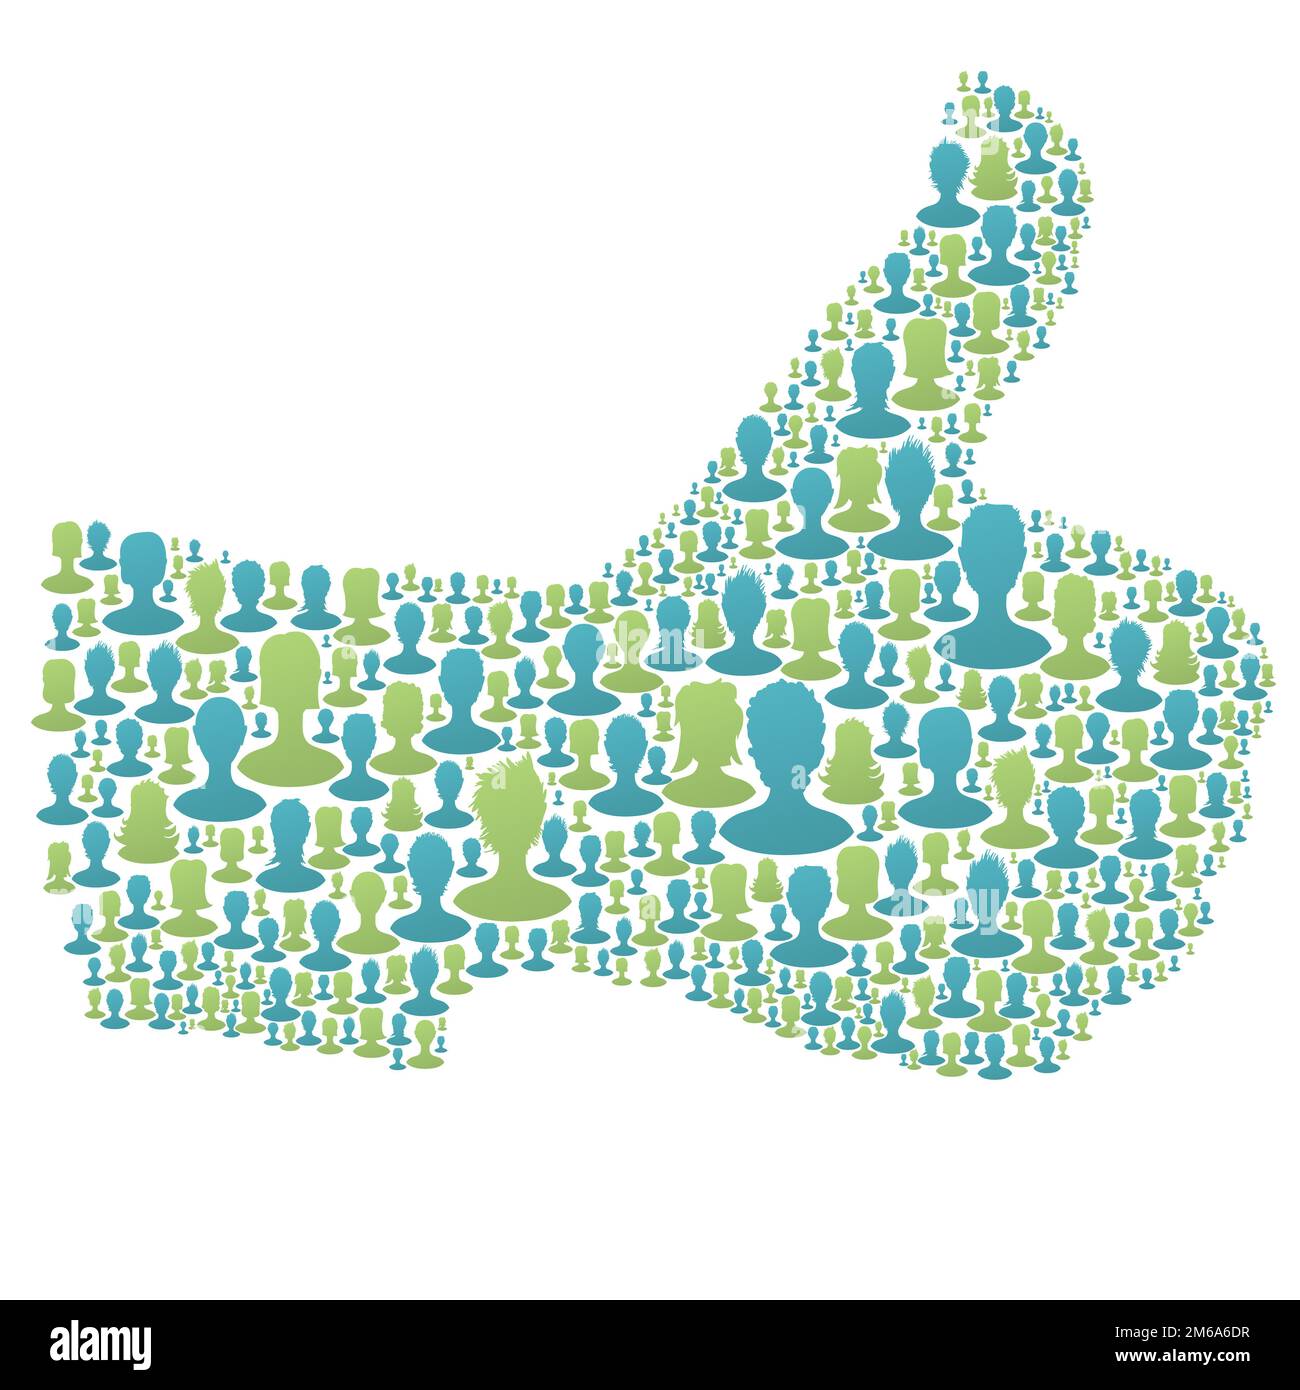 Thumb up symbole. composé d'un grand nombre de personnes de silhouettes. Illustration vectorielle, EPS10 Banque D'Images